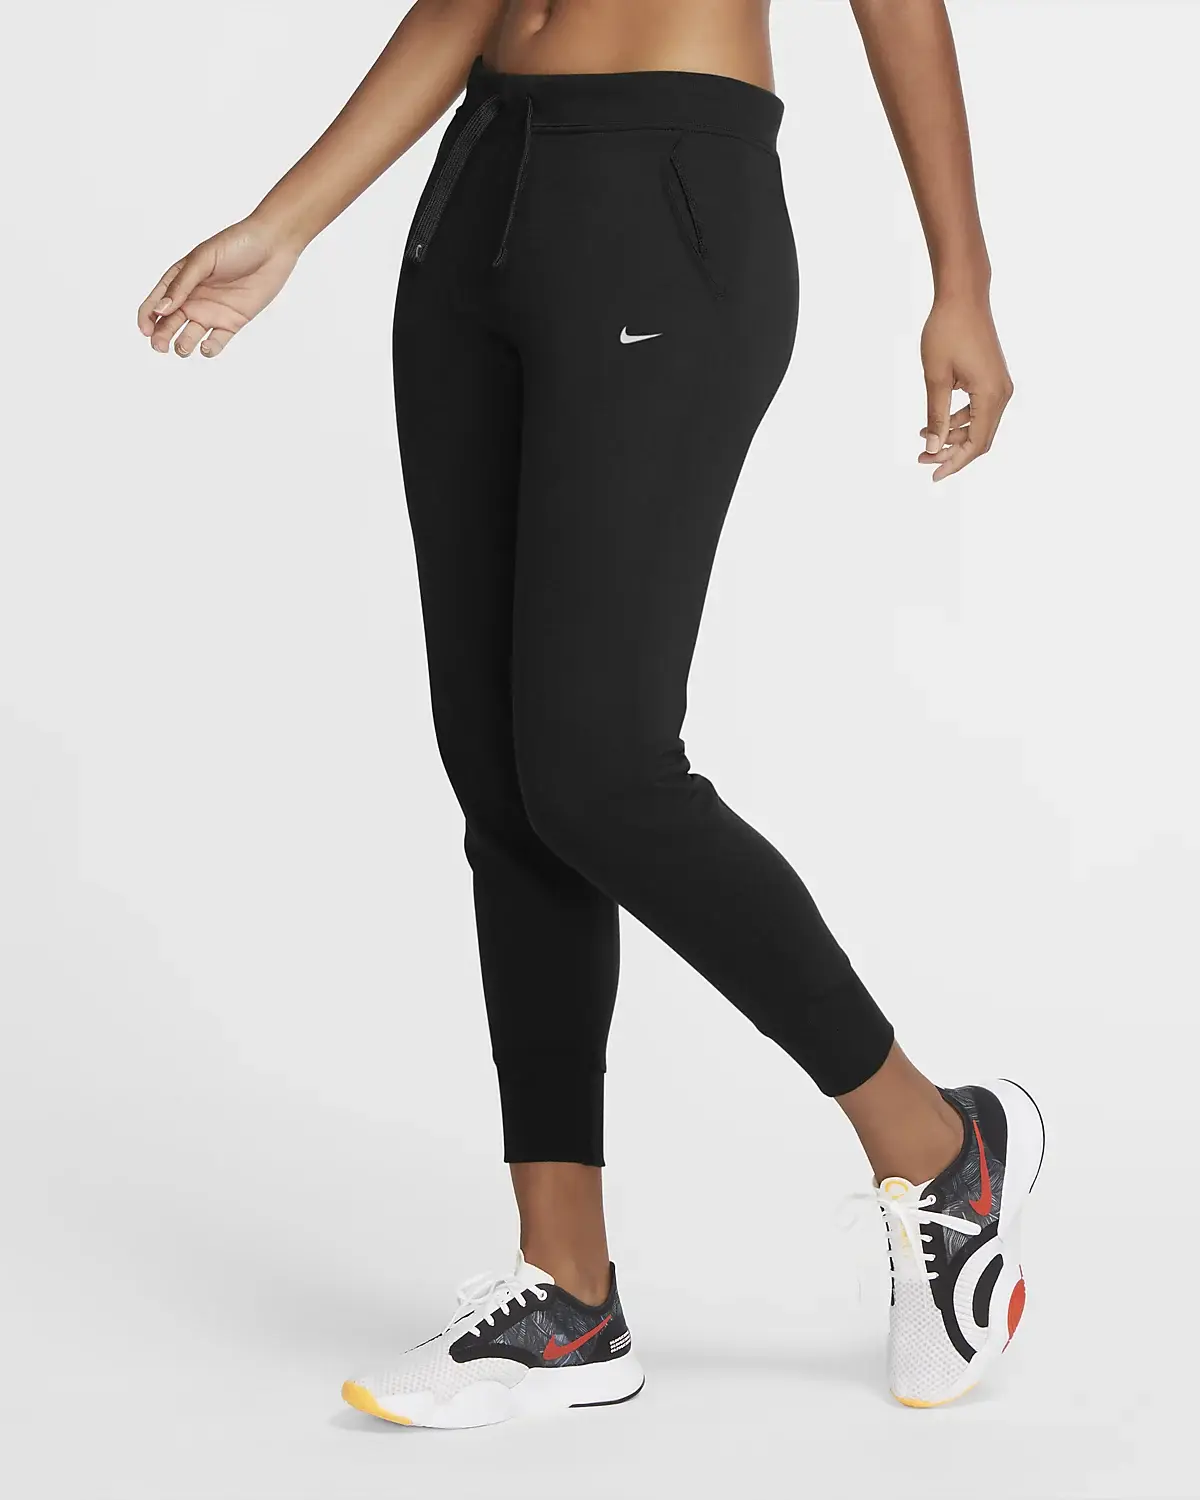 Nike Dri-FIT Get Fit. 1